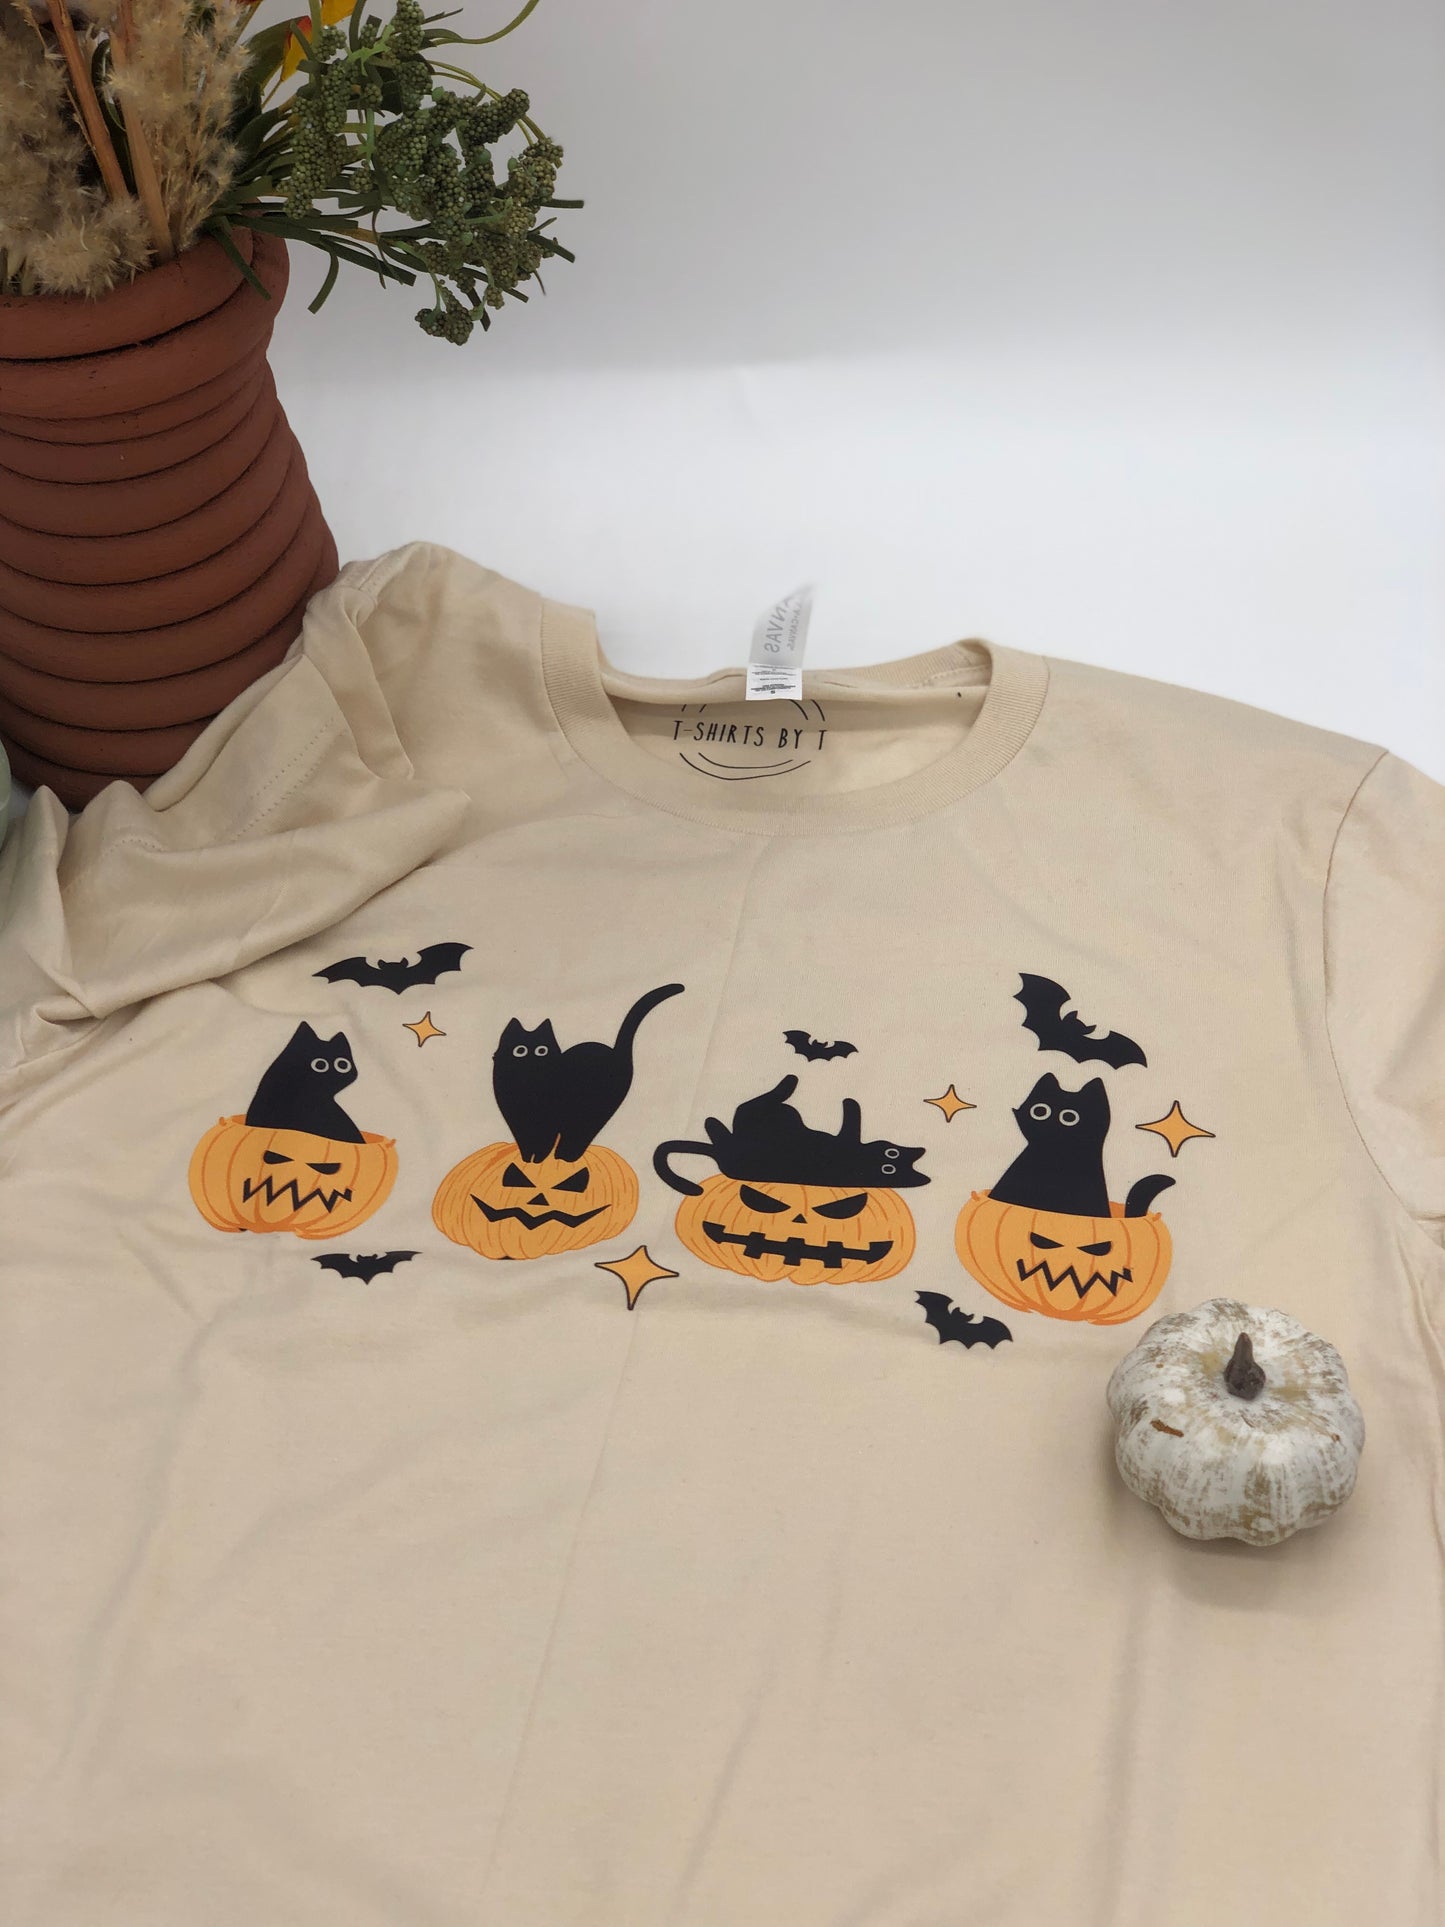 Pumpkins and black cat